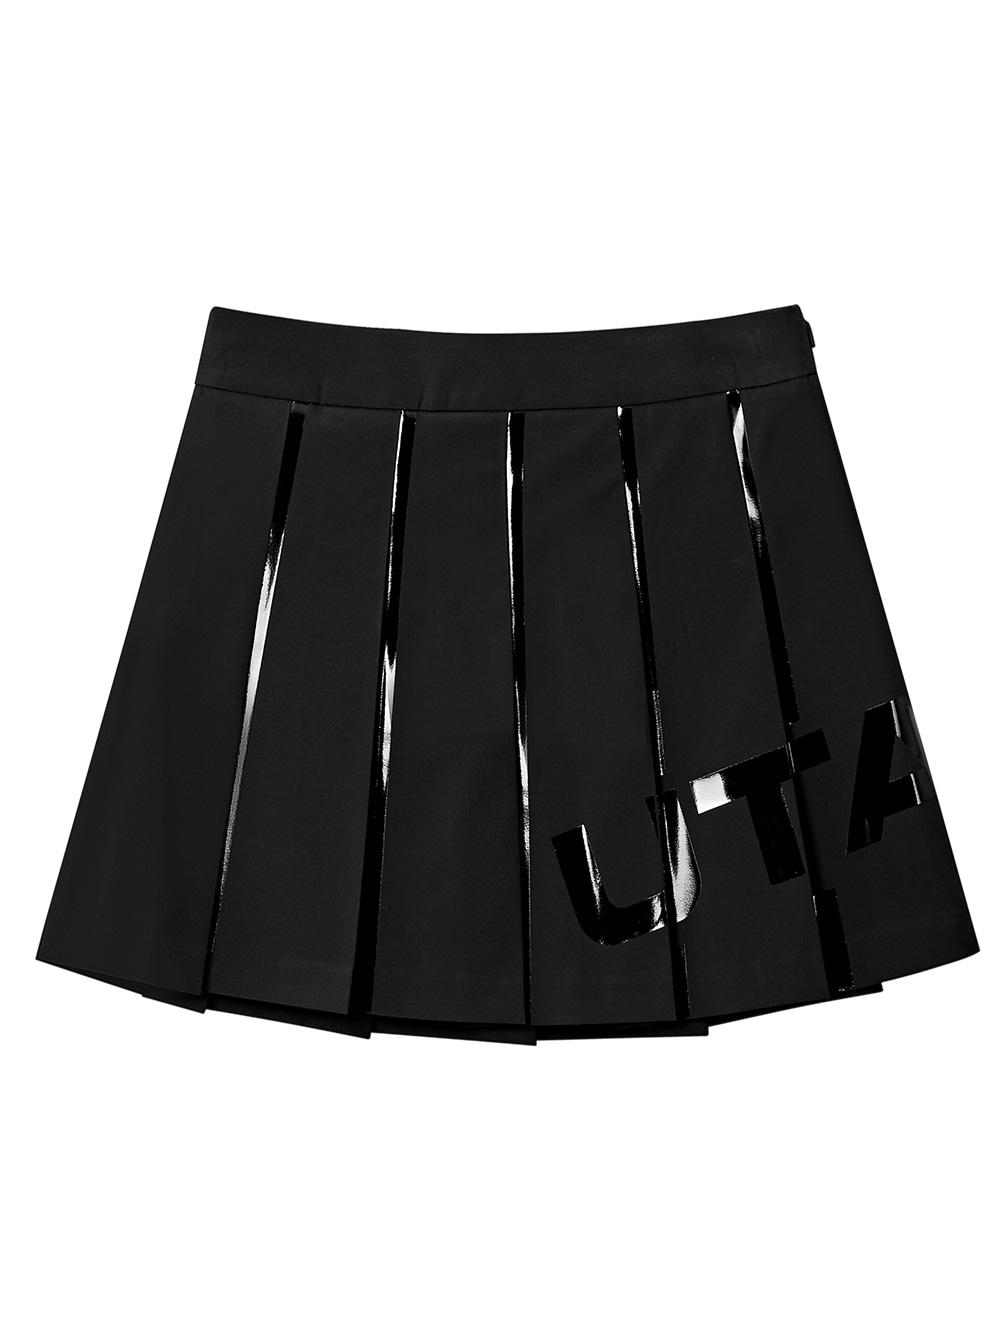 UTAA Welding Bounce Logo Flare Fan Skirt : Black (UB3SKF120BK)